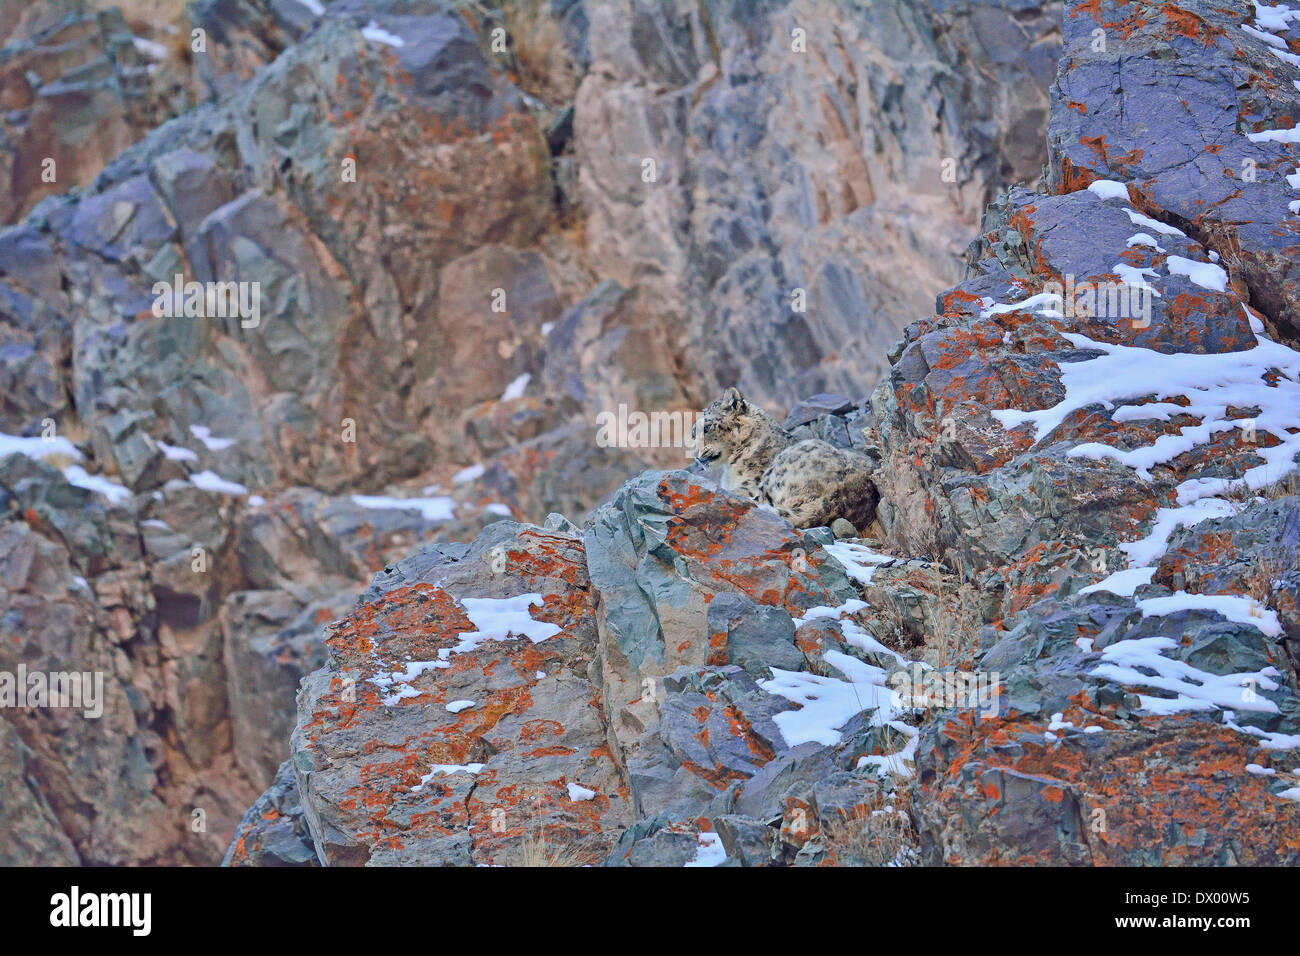 Snow Leopard (Panthera uncia o Uncia uncia) in appoggio su una coperta lichene rock in Hemis national park, Ladakh, India Foto Stock